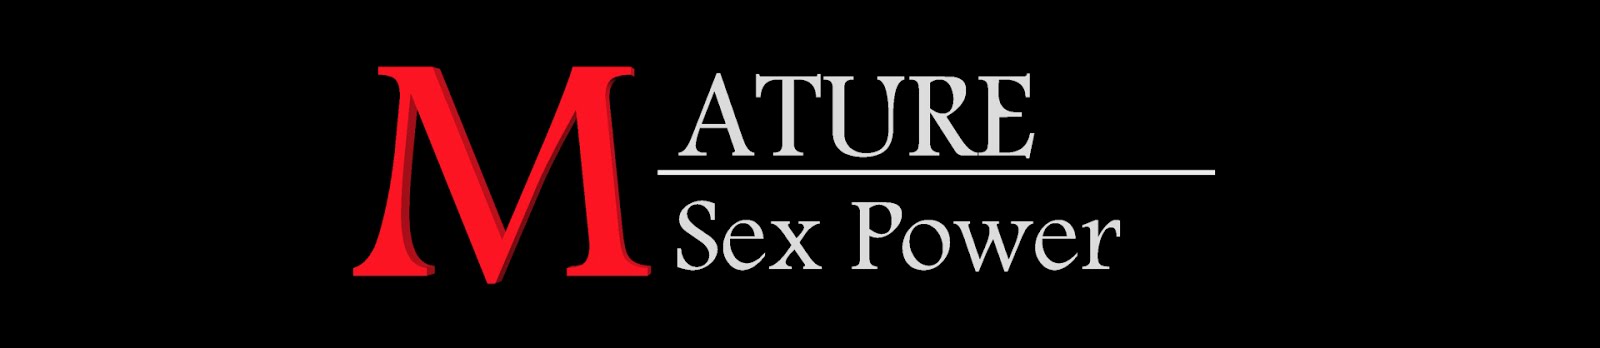 Mature Sex Power